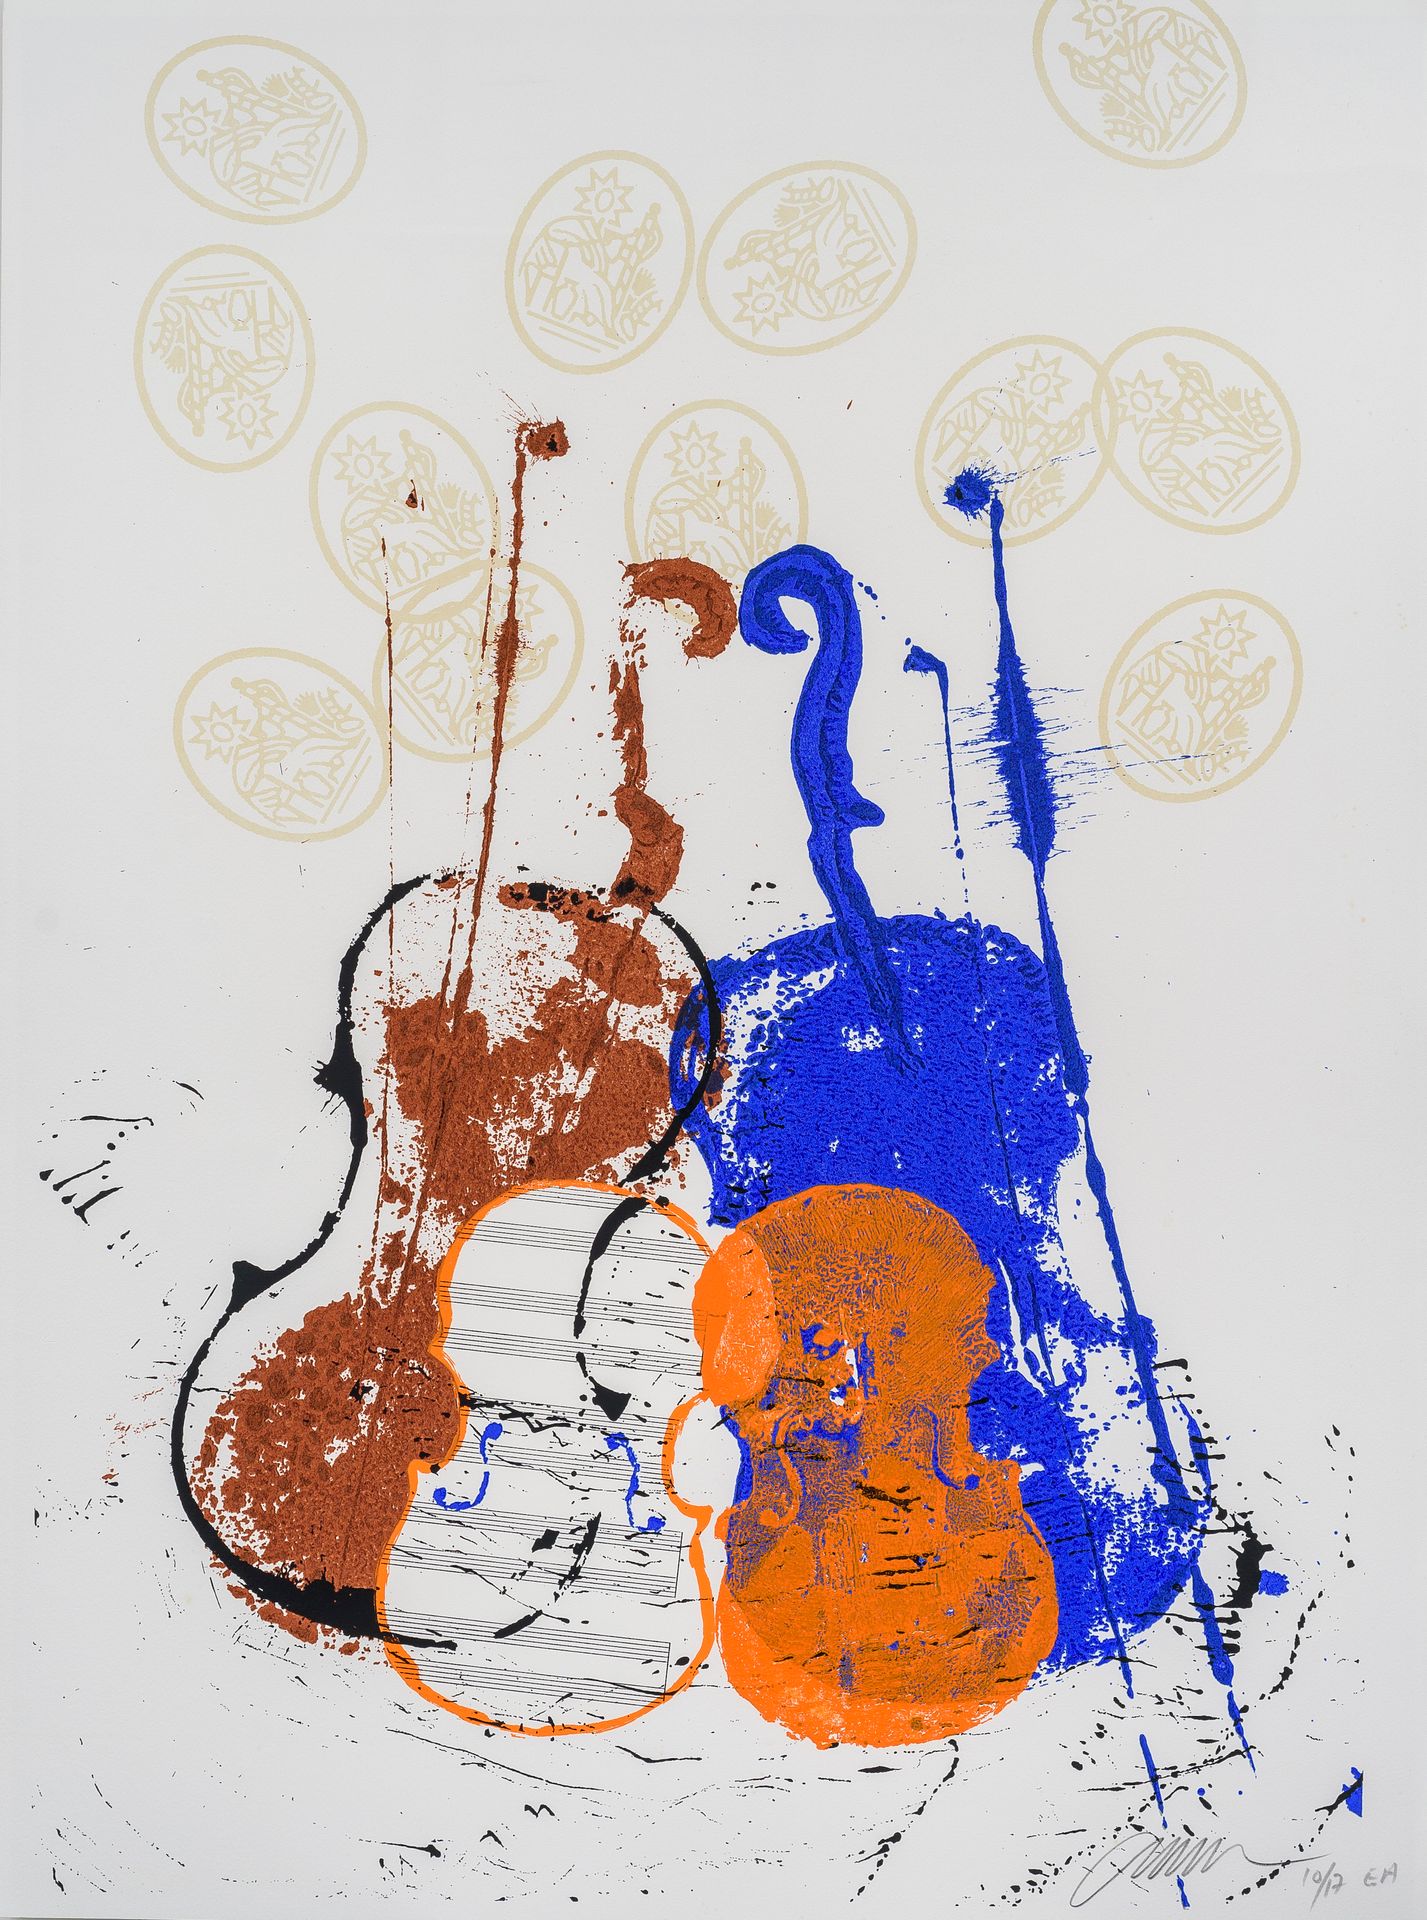 Null 阿尔曼(1928-2005)

四把小提琴

石版画

有签名和编号的EA 10/17

79 x 59 厘米

有框